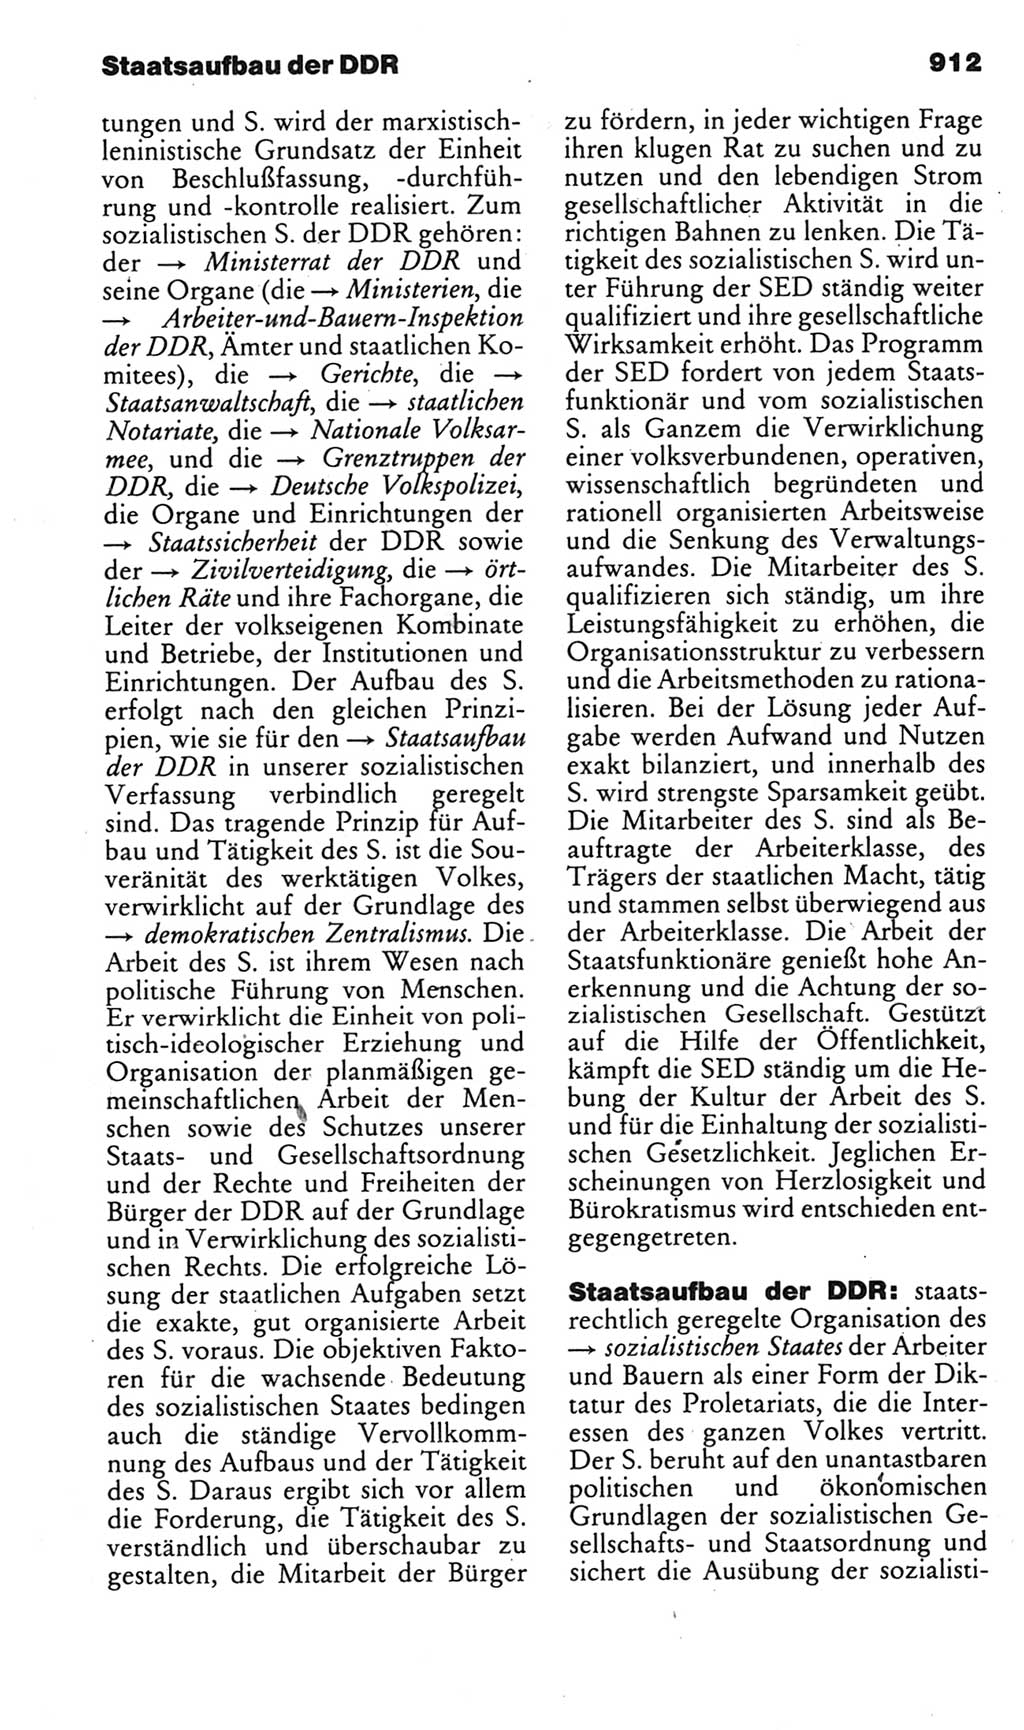 Kleines politisches Wörterbuch [Deutsche Demokratische Republik (DDR)] 1985, Seite 912 (Kl. pol. Wb. DDR 1985, S. 912)